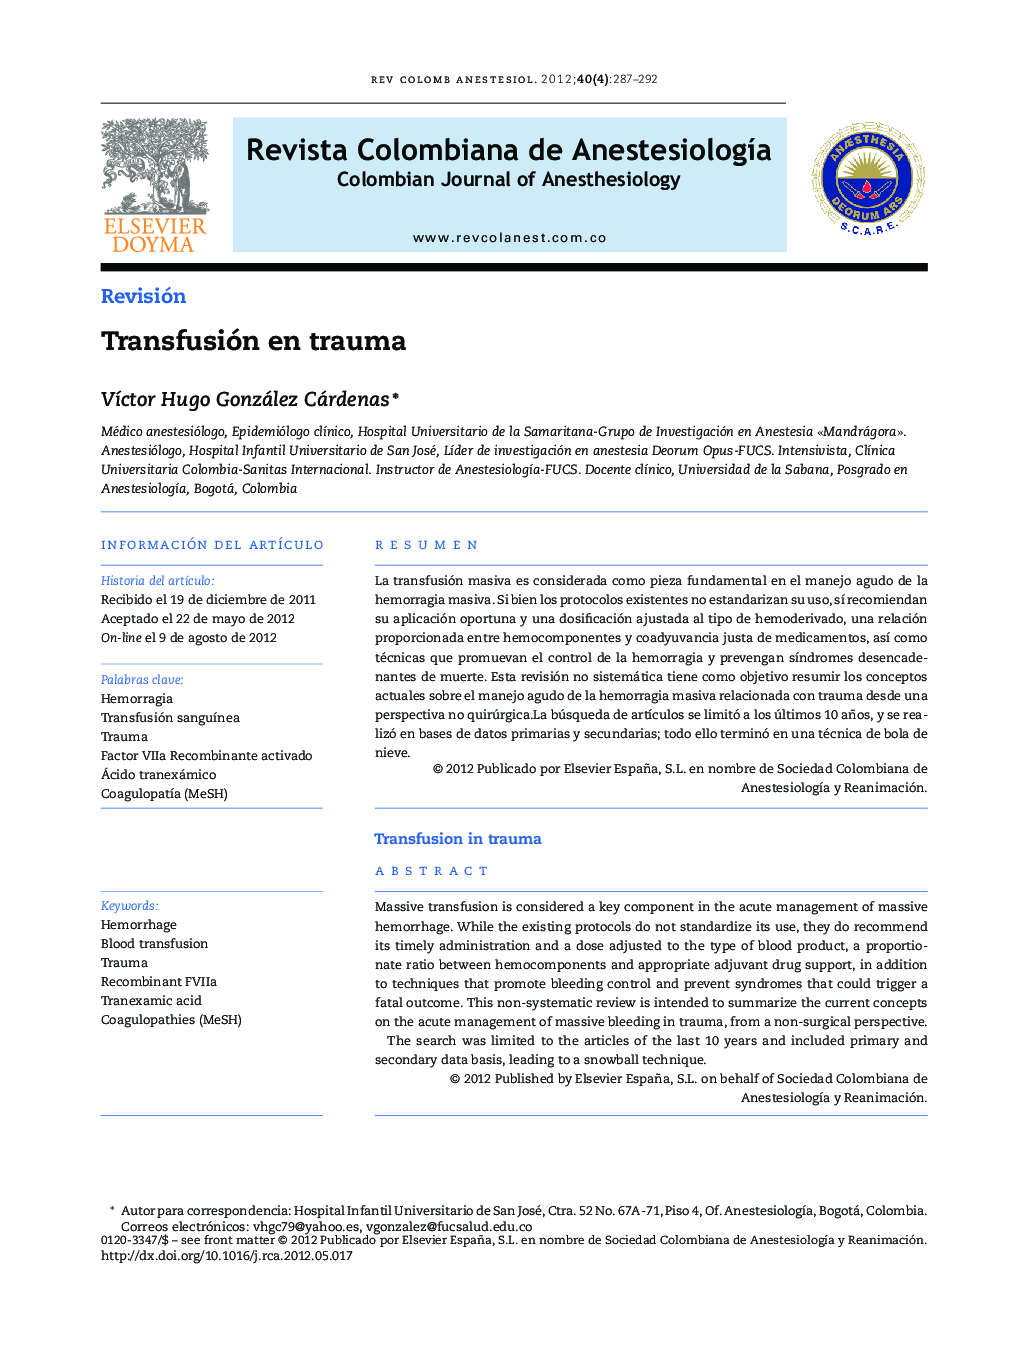 Transfusión en trauma